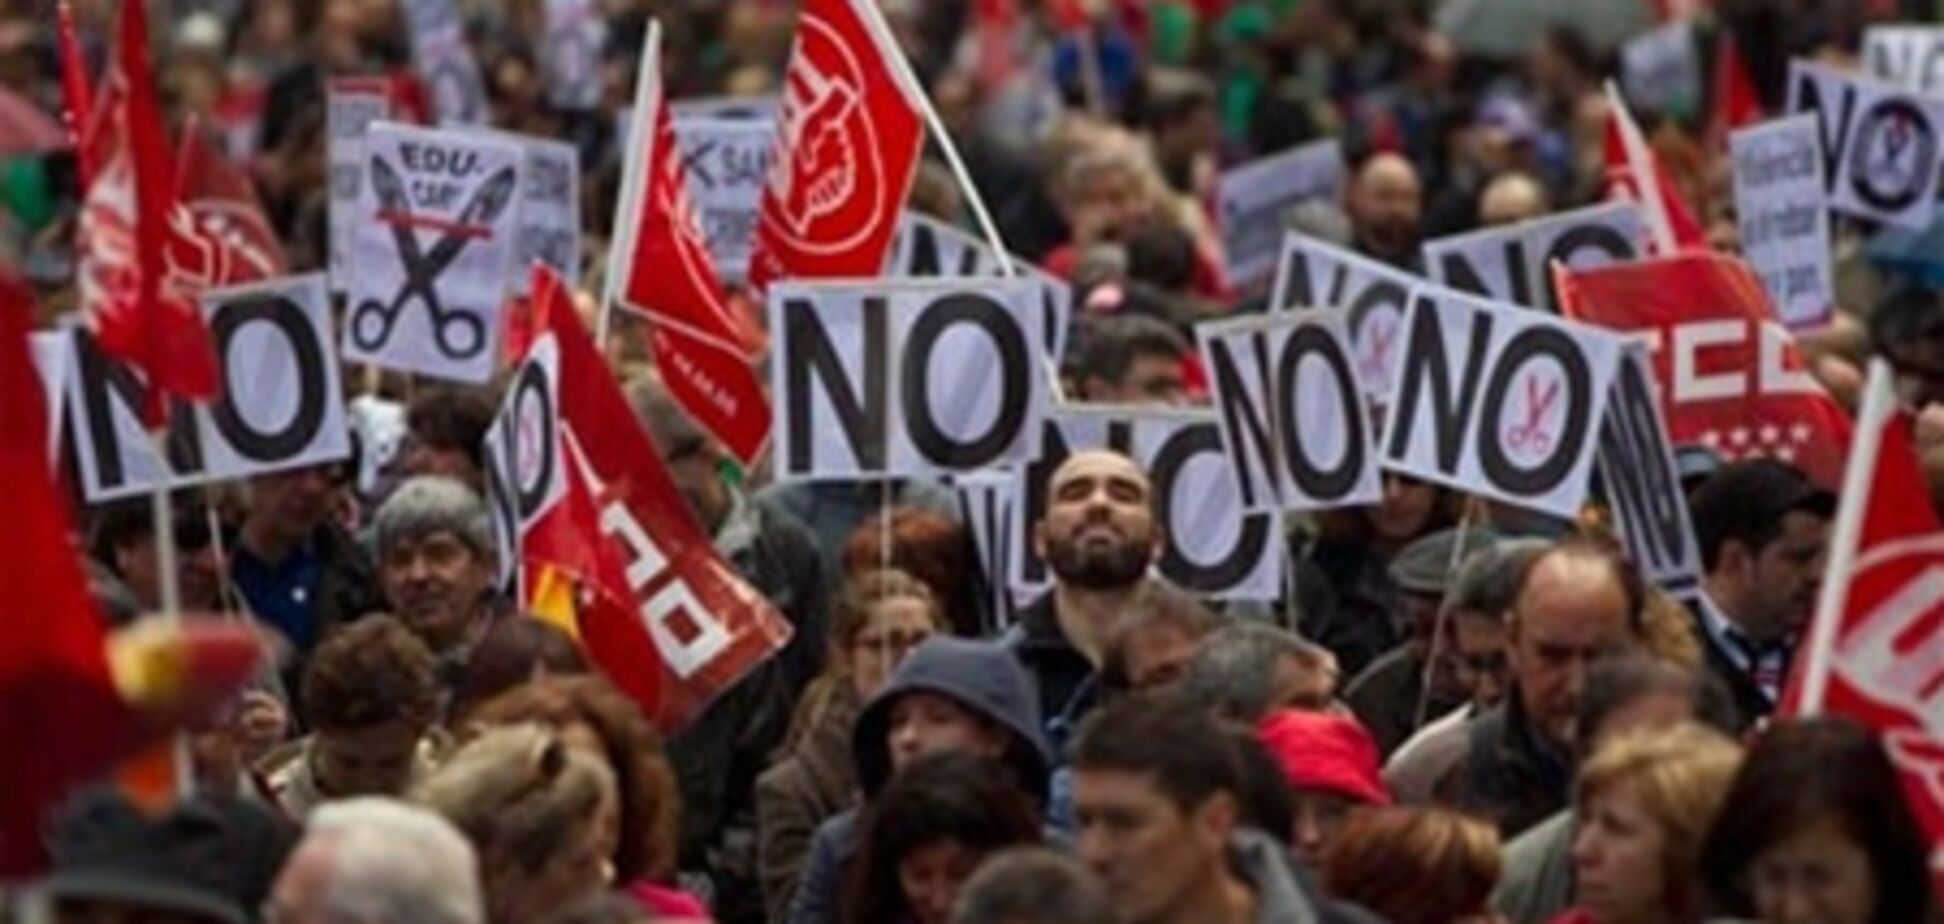 Служащие королевского двора Испании впервые проведут забастовку